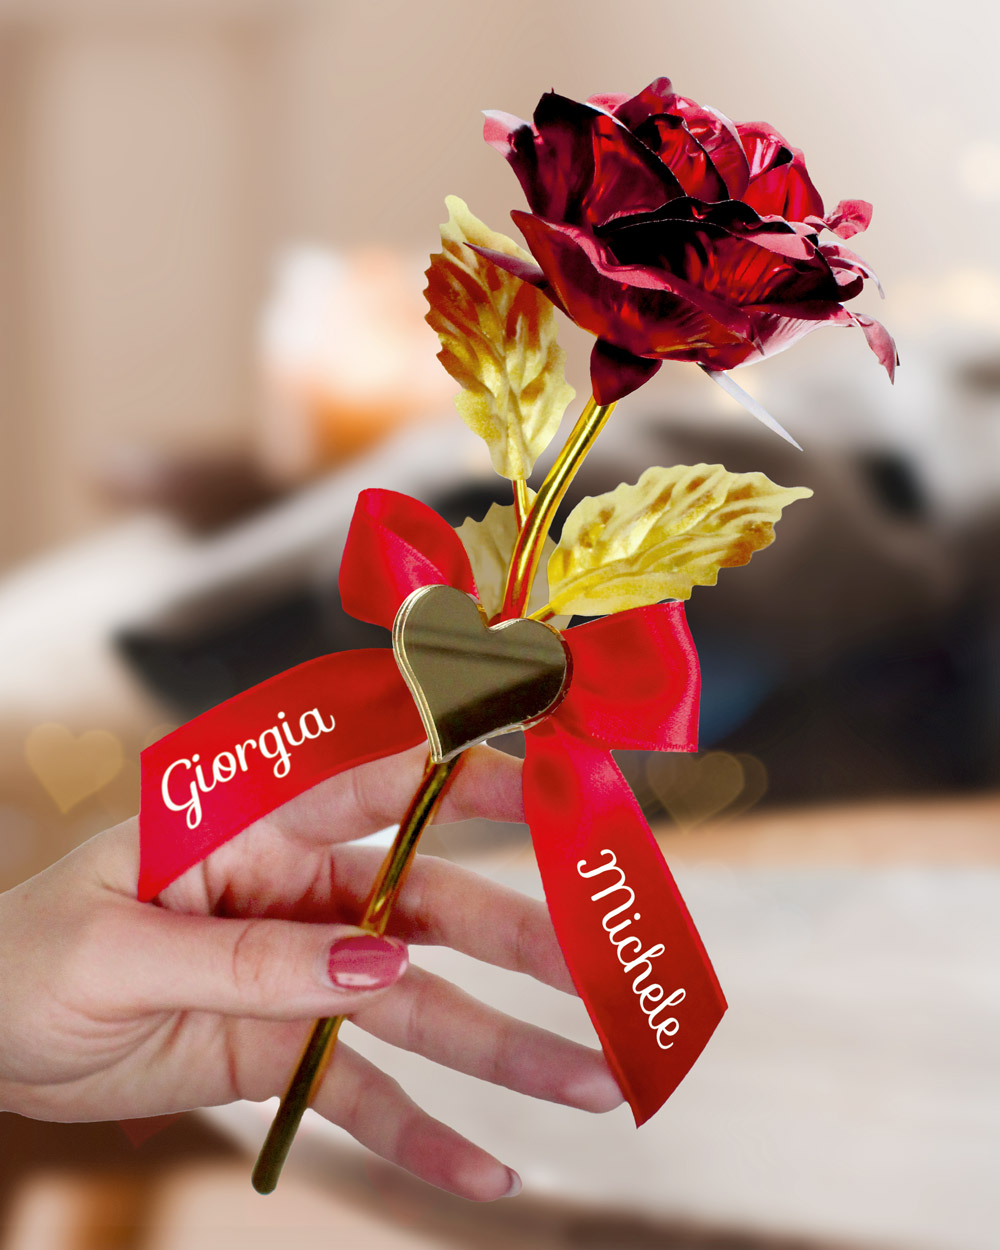 Rosa Rossa Artificiale Personalizzata con Nastro in Raso con i Vostri Nomi  e Cuoricino in Oro Specchiato - Idea Regalo Romantica per San Valentino